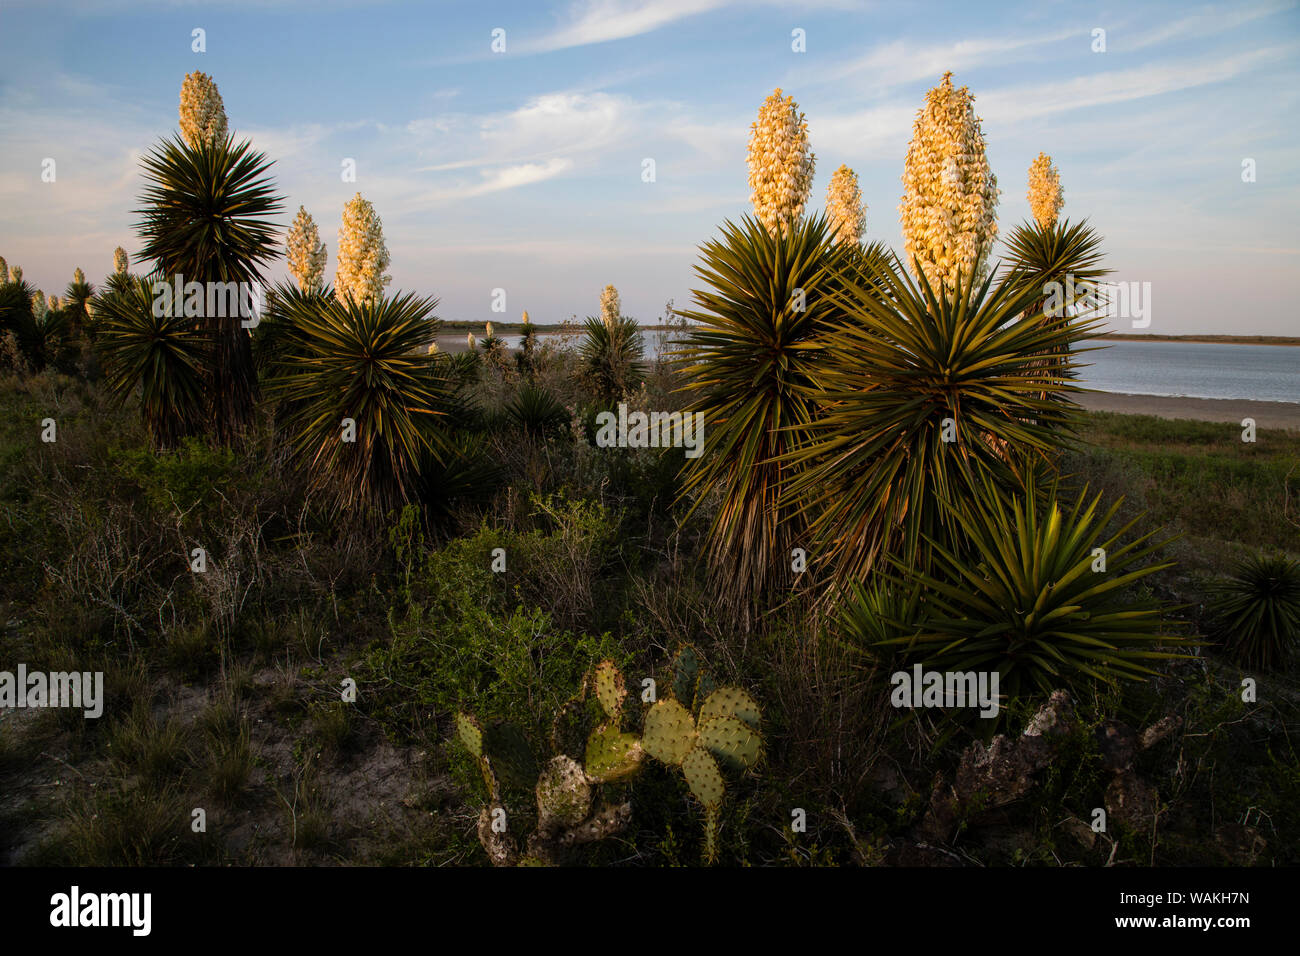 Pugnale spagnolo (Yucca treculeana) in fiore. Foto Stock